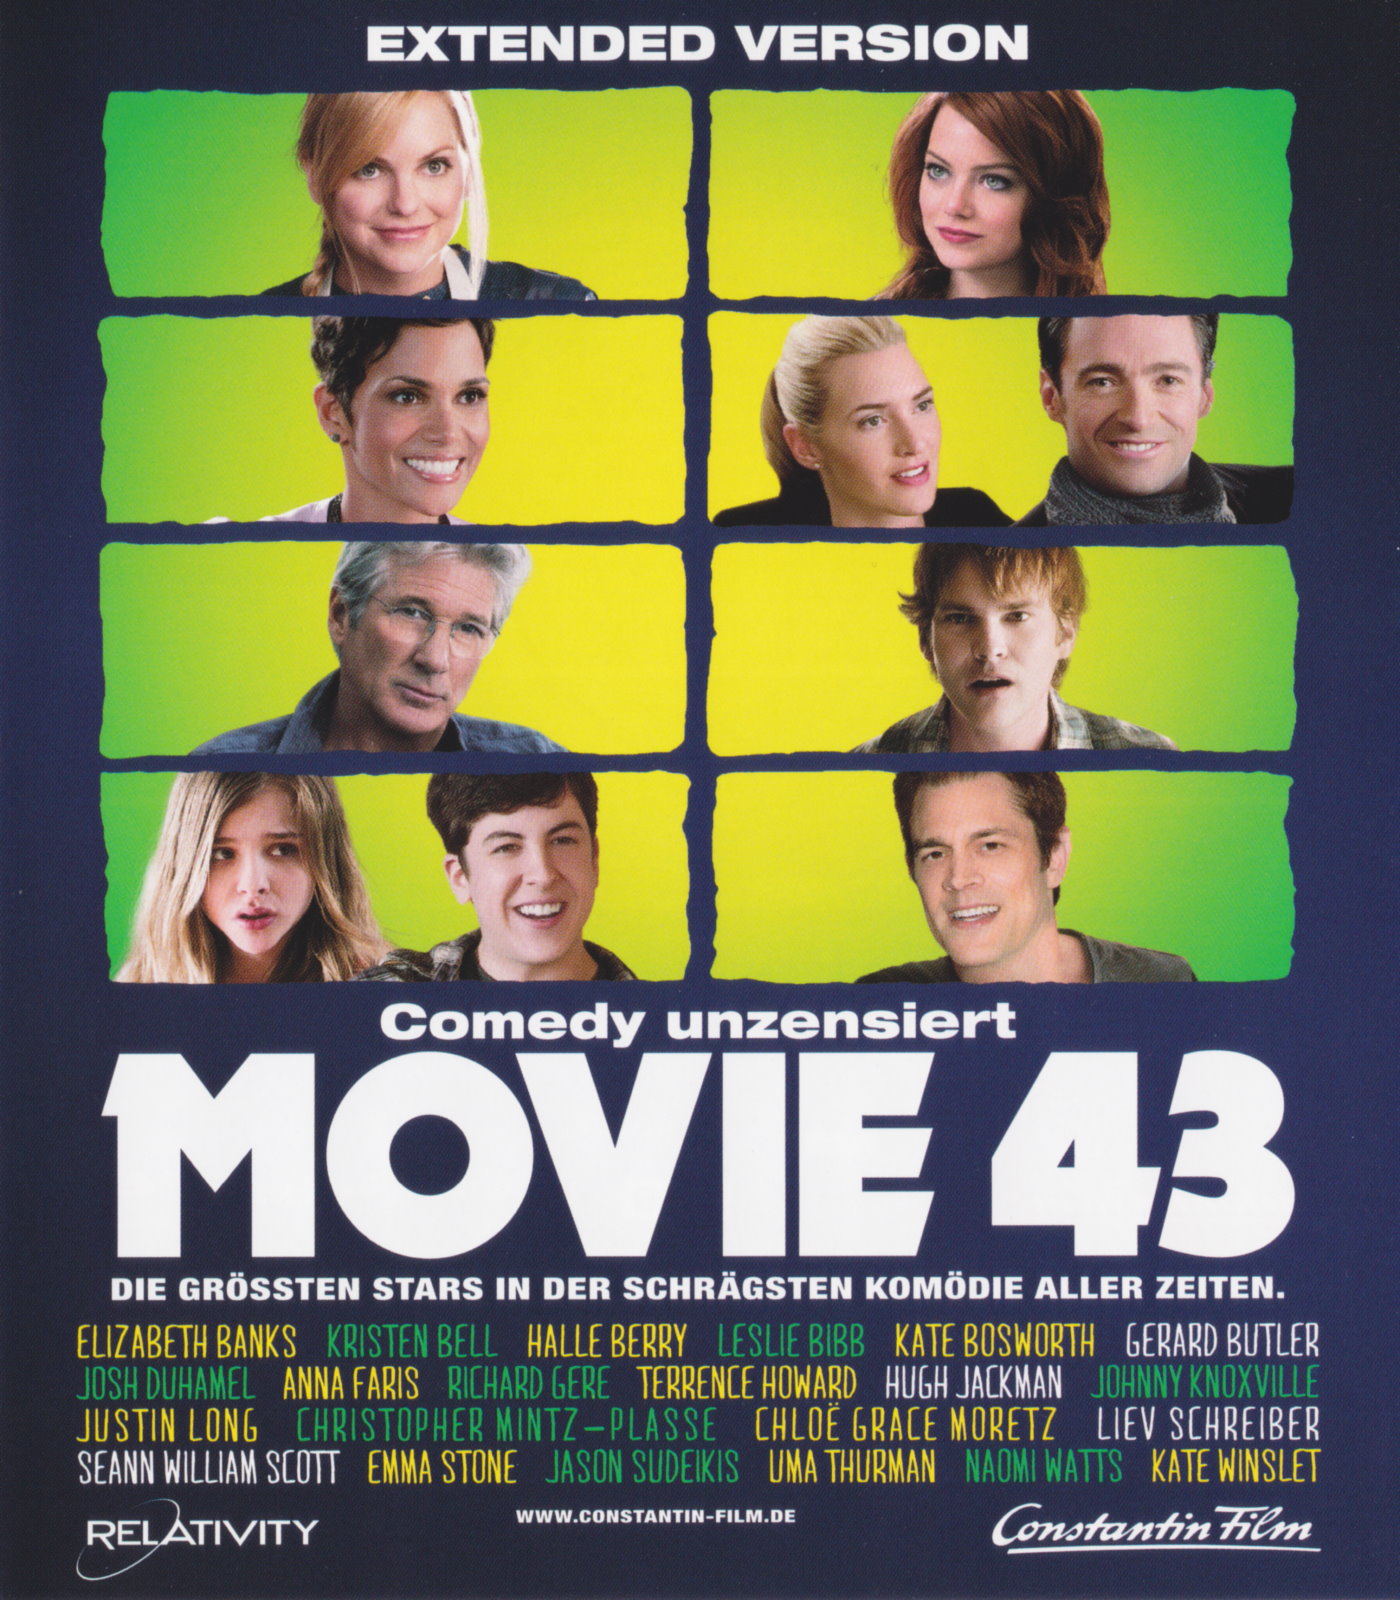 Cover - Movie 43.jpg